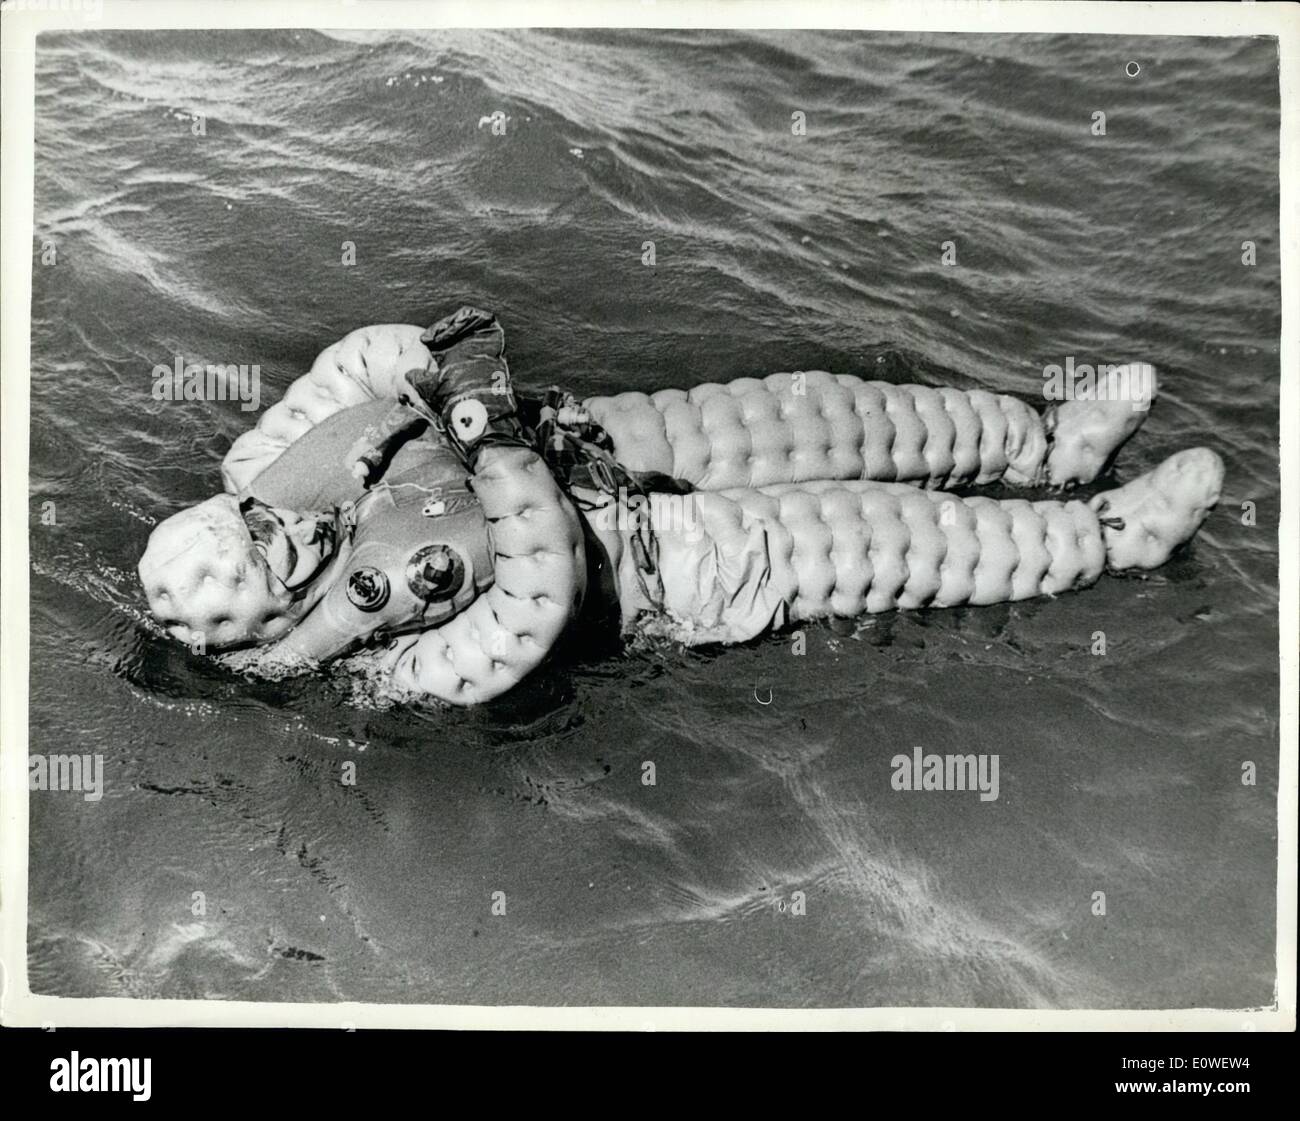 10 octobre 1962 - les hommes de la Marine s'échapper de sous-marin dans l'expérimentation : Royal Navy hommes ont échappé à l'altitude des pieds sous-marin 260 pieds sur le fond de la Méditerranée et a fait l'histoire de la Marine : pas de R.N. homme n'a jamais survécu à une ascension à la surface de plus de 150 pieds avant. L'équipe d'expérimenter de nouvelles stratégies de fuite est de l'école de formation de sous-marin à Gosport, Hants. Photo montre une combinaison de survie jaune conserve Maître David Cleret à flot après l'évasion l'expérience. Banque D'Images